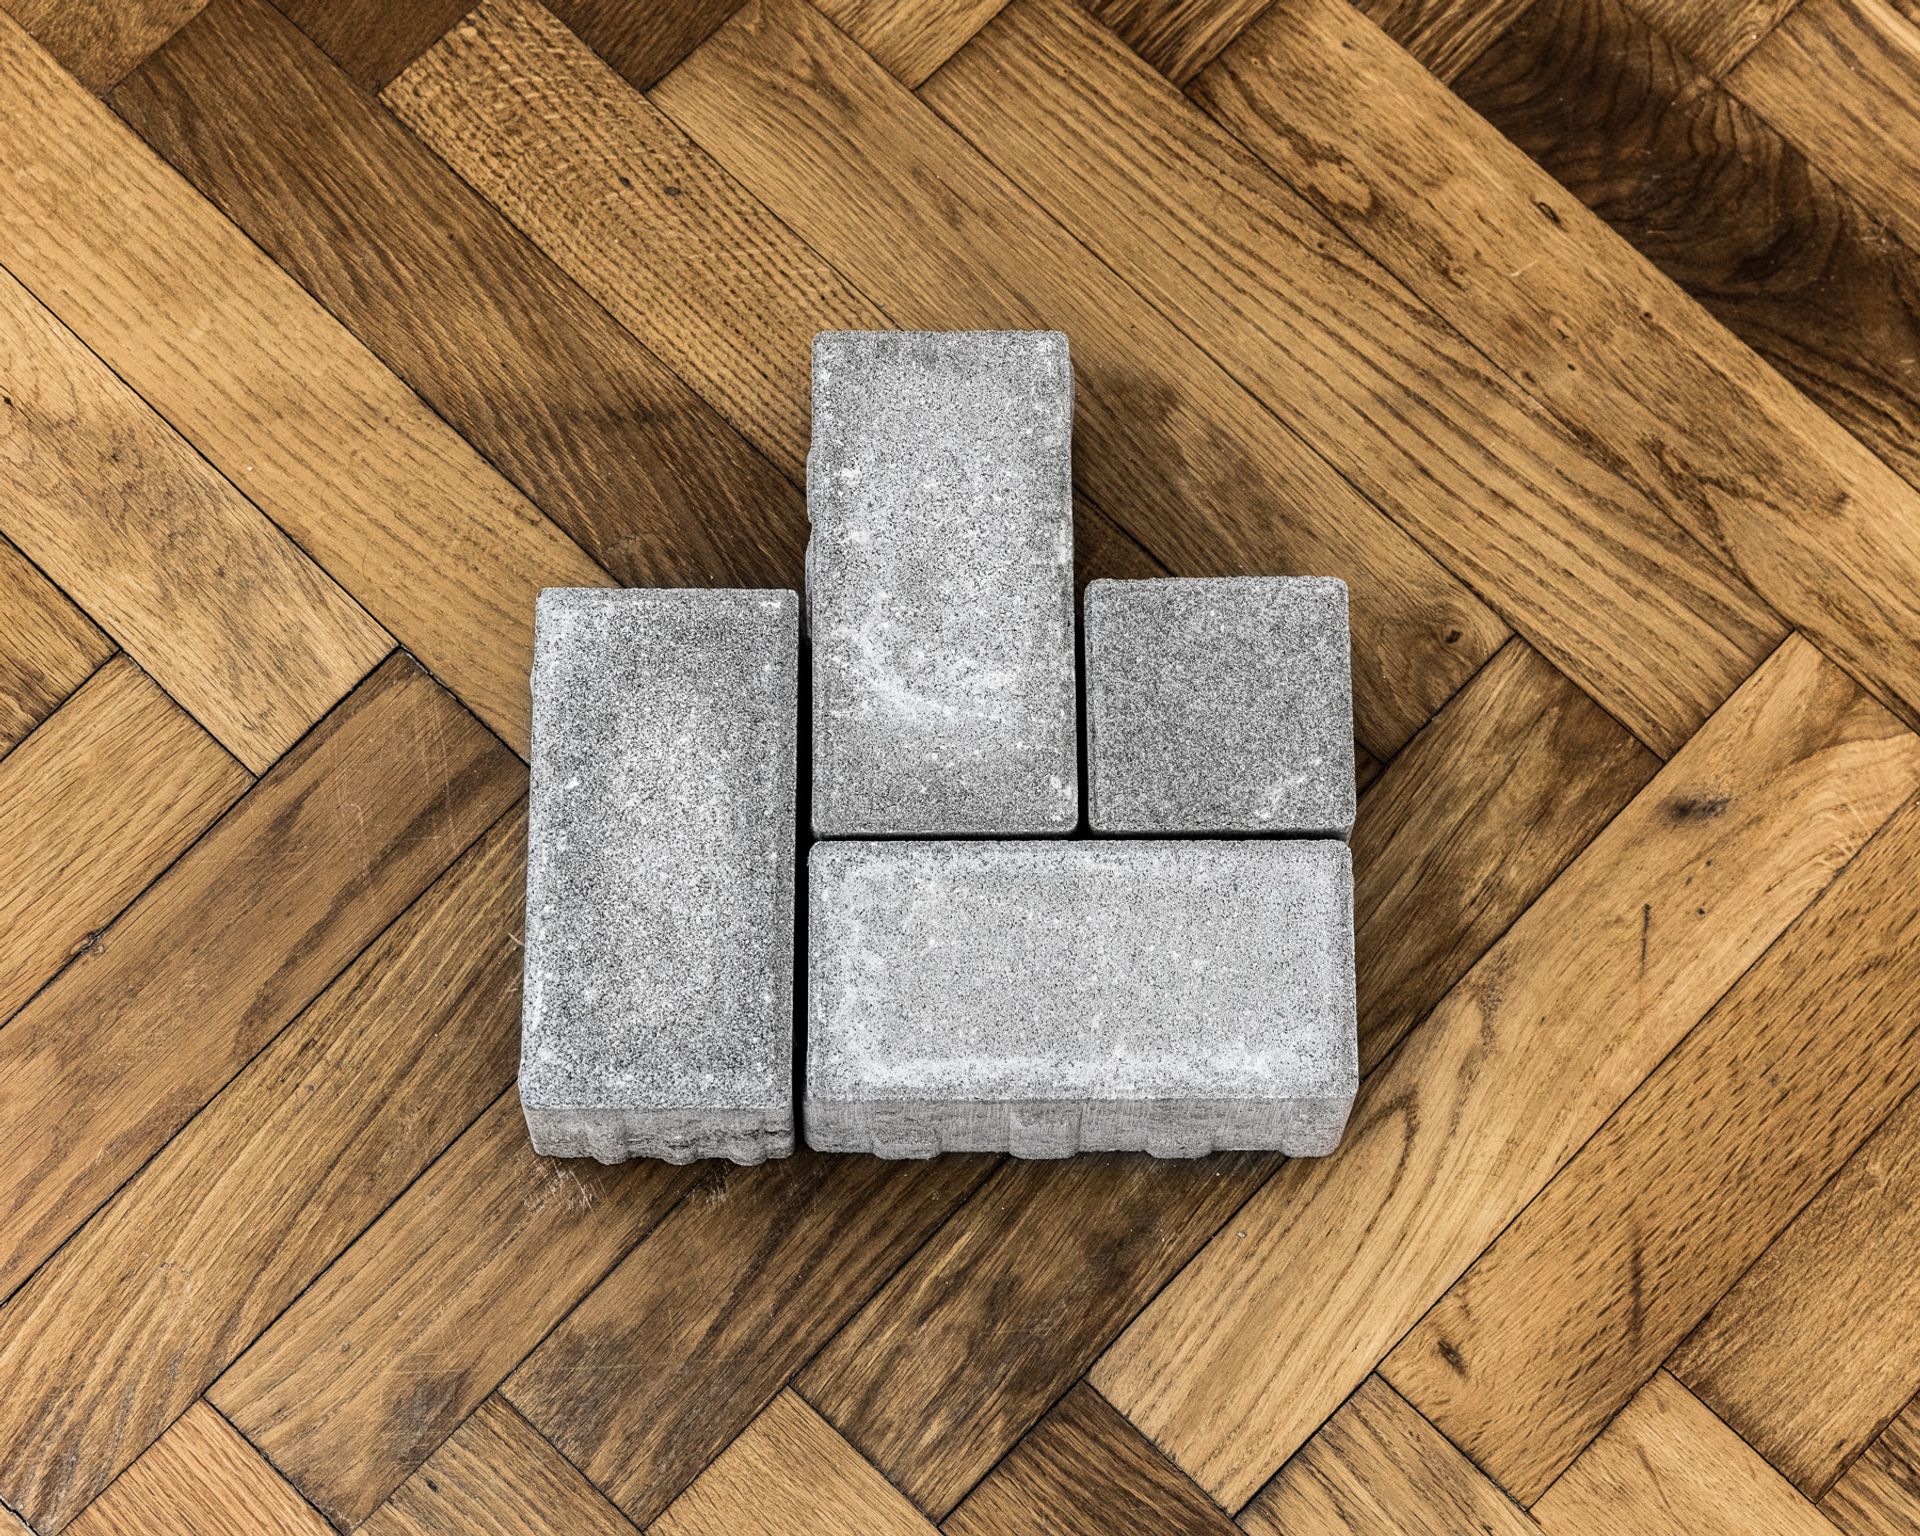 Thomas Geiger, A stage to hide a secret, 2017, concrete paving stones, adhesive letters, 30,5 × 30 × 8 cm 